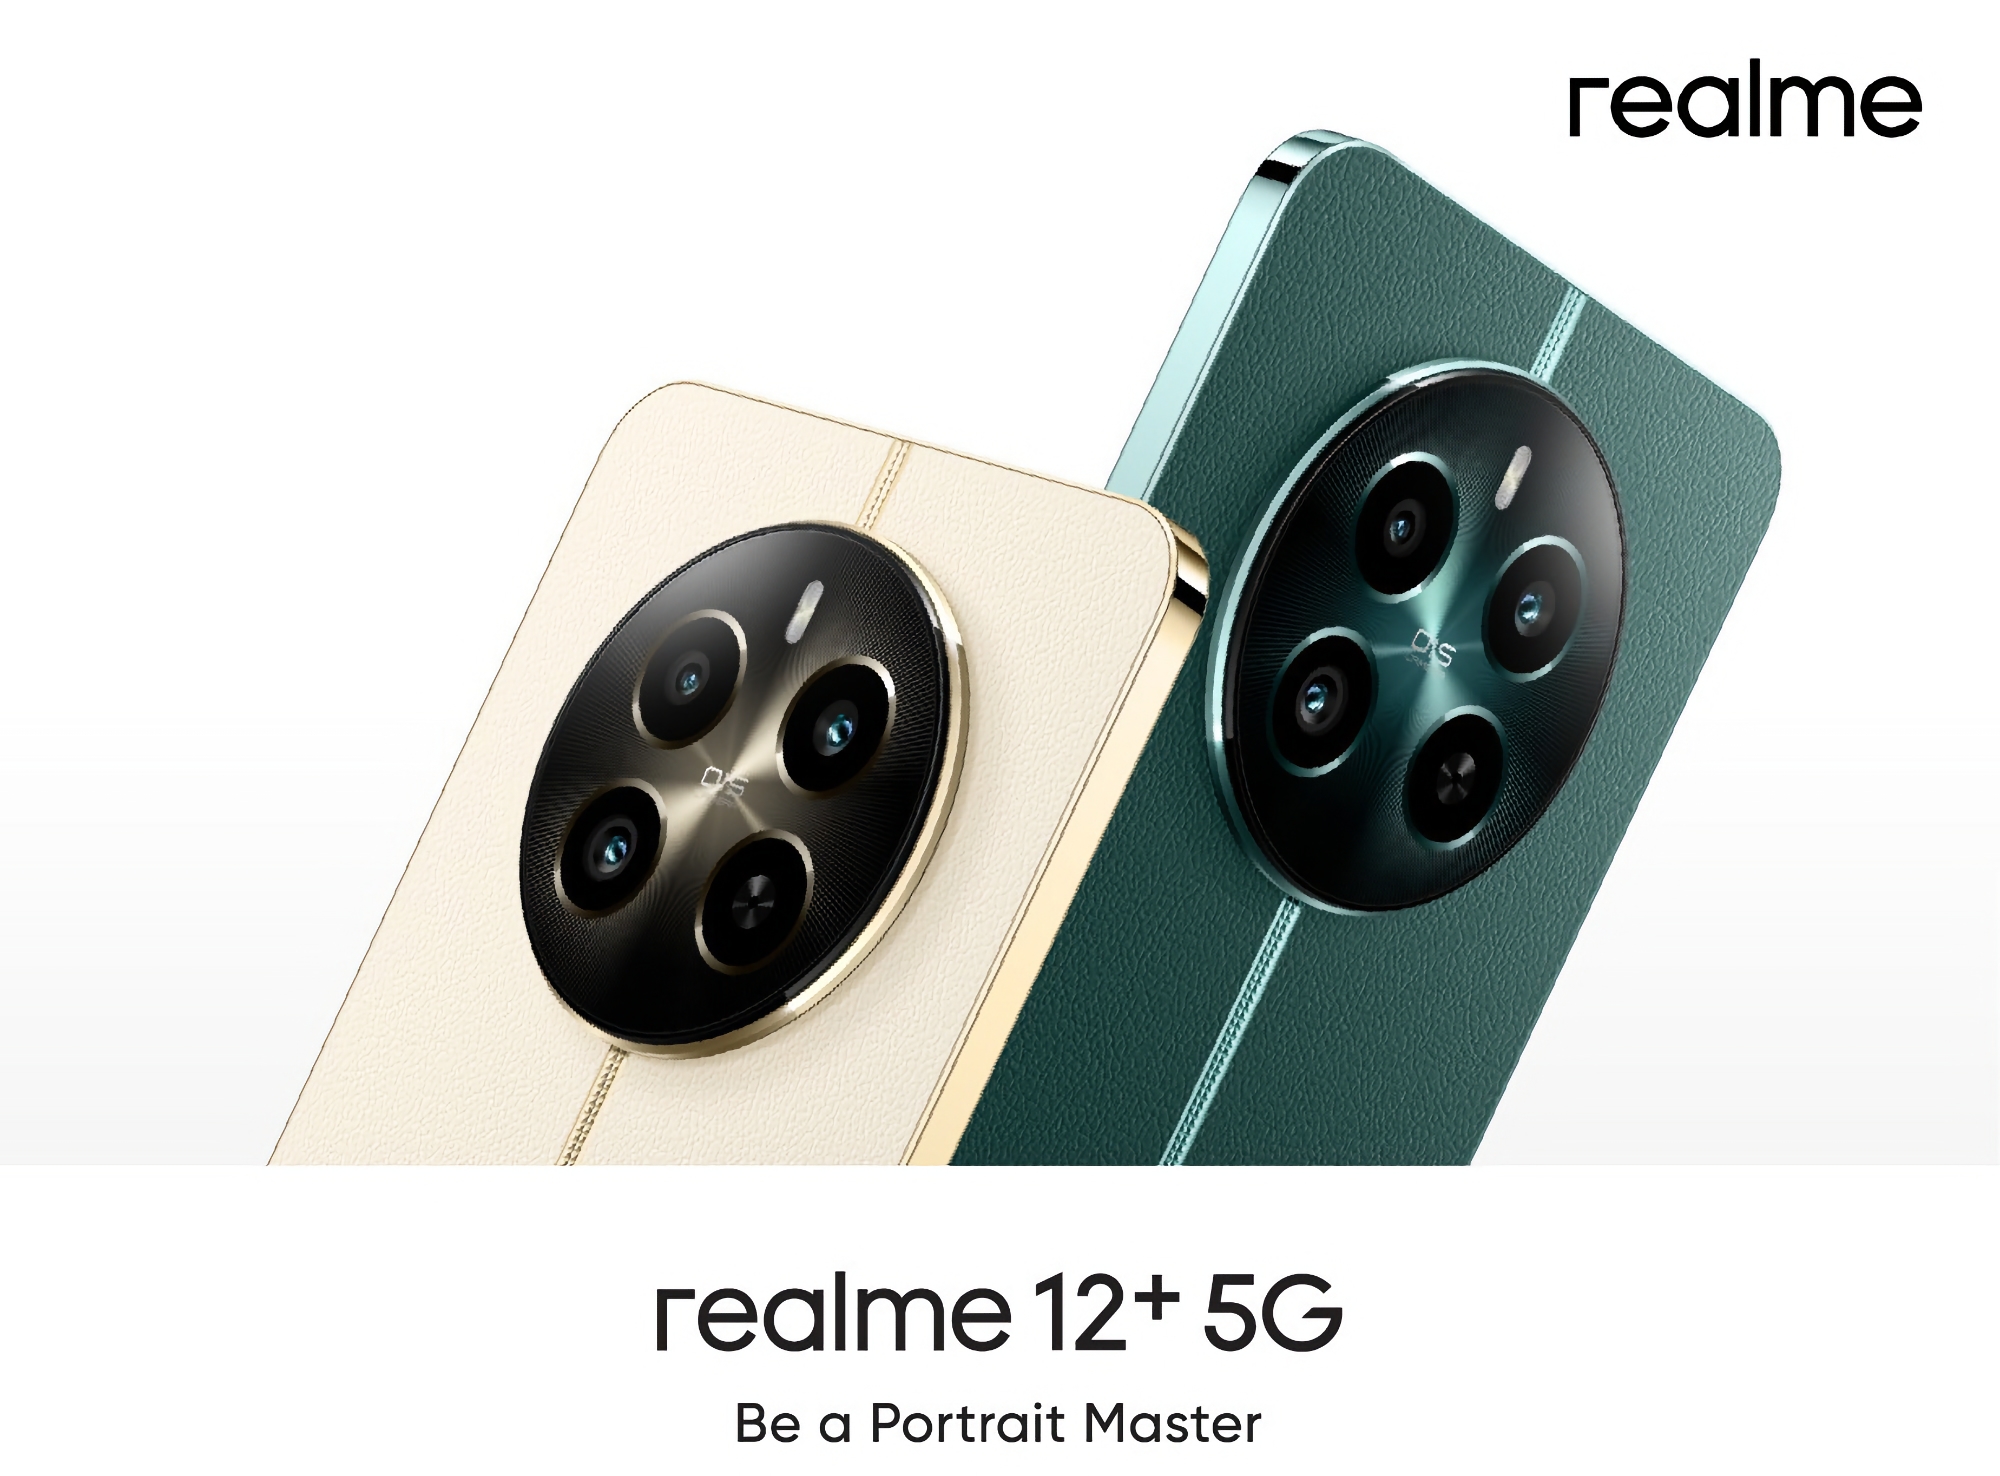 Så här kommer Realme 12+ 5G att se ut: en smartphone med en 120 Hz AMOLED-skärm, ett Dimensity 7050-chip och en 50 MP-kamera